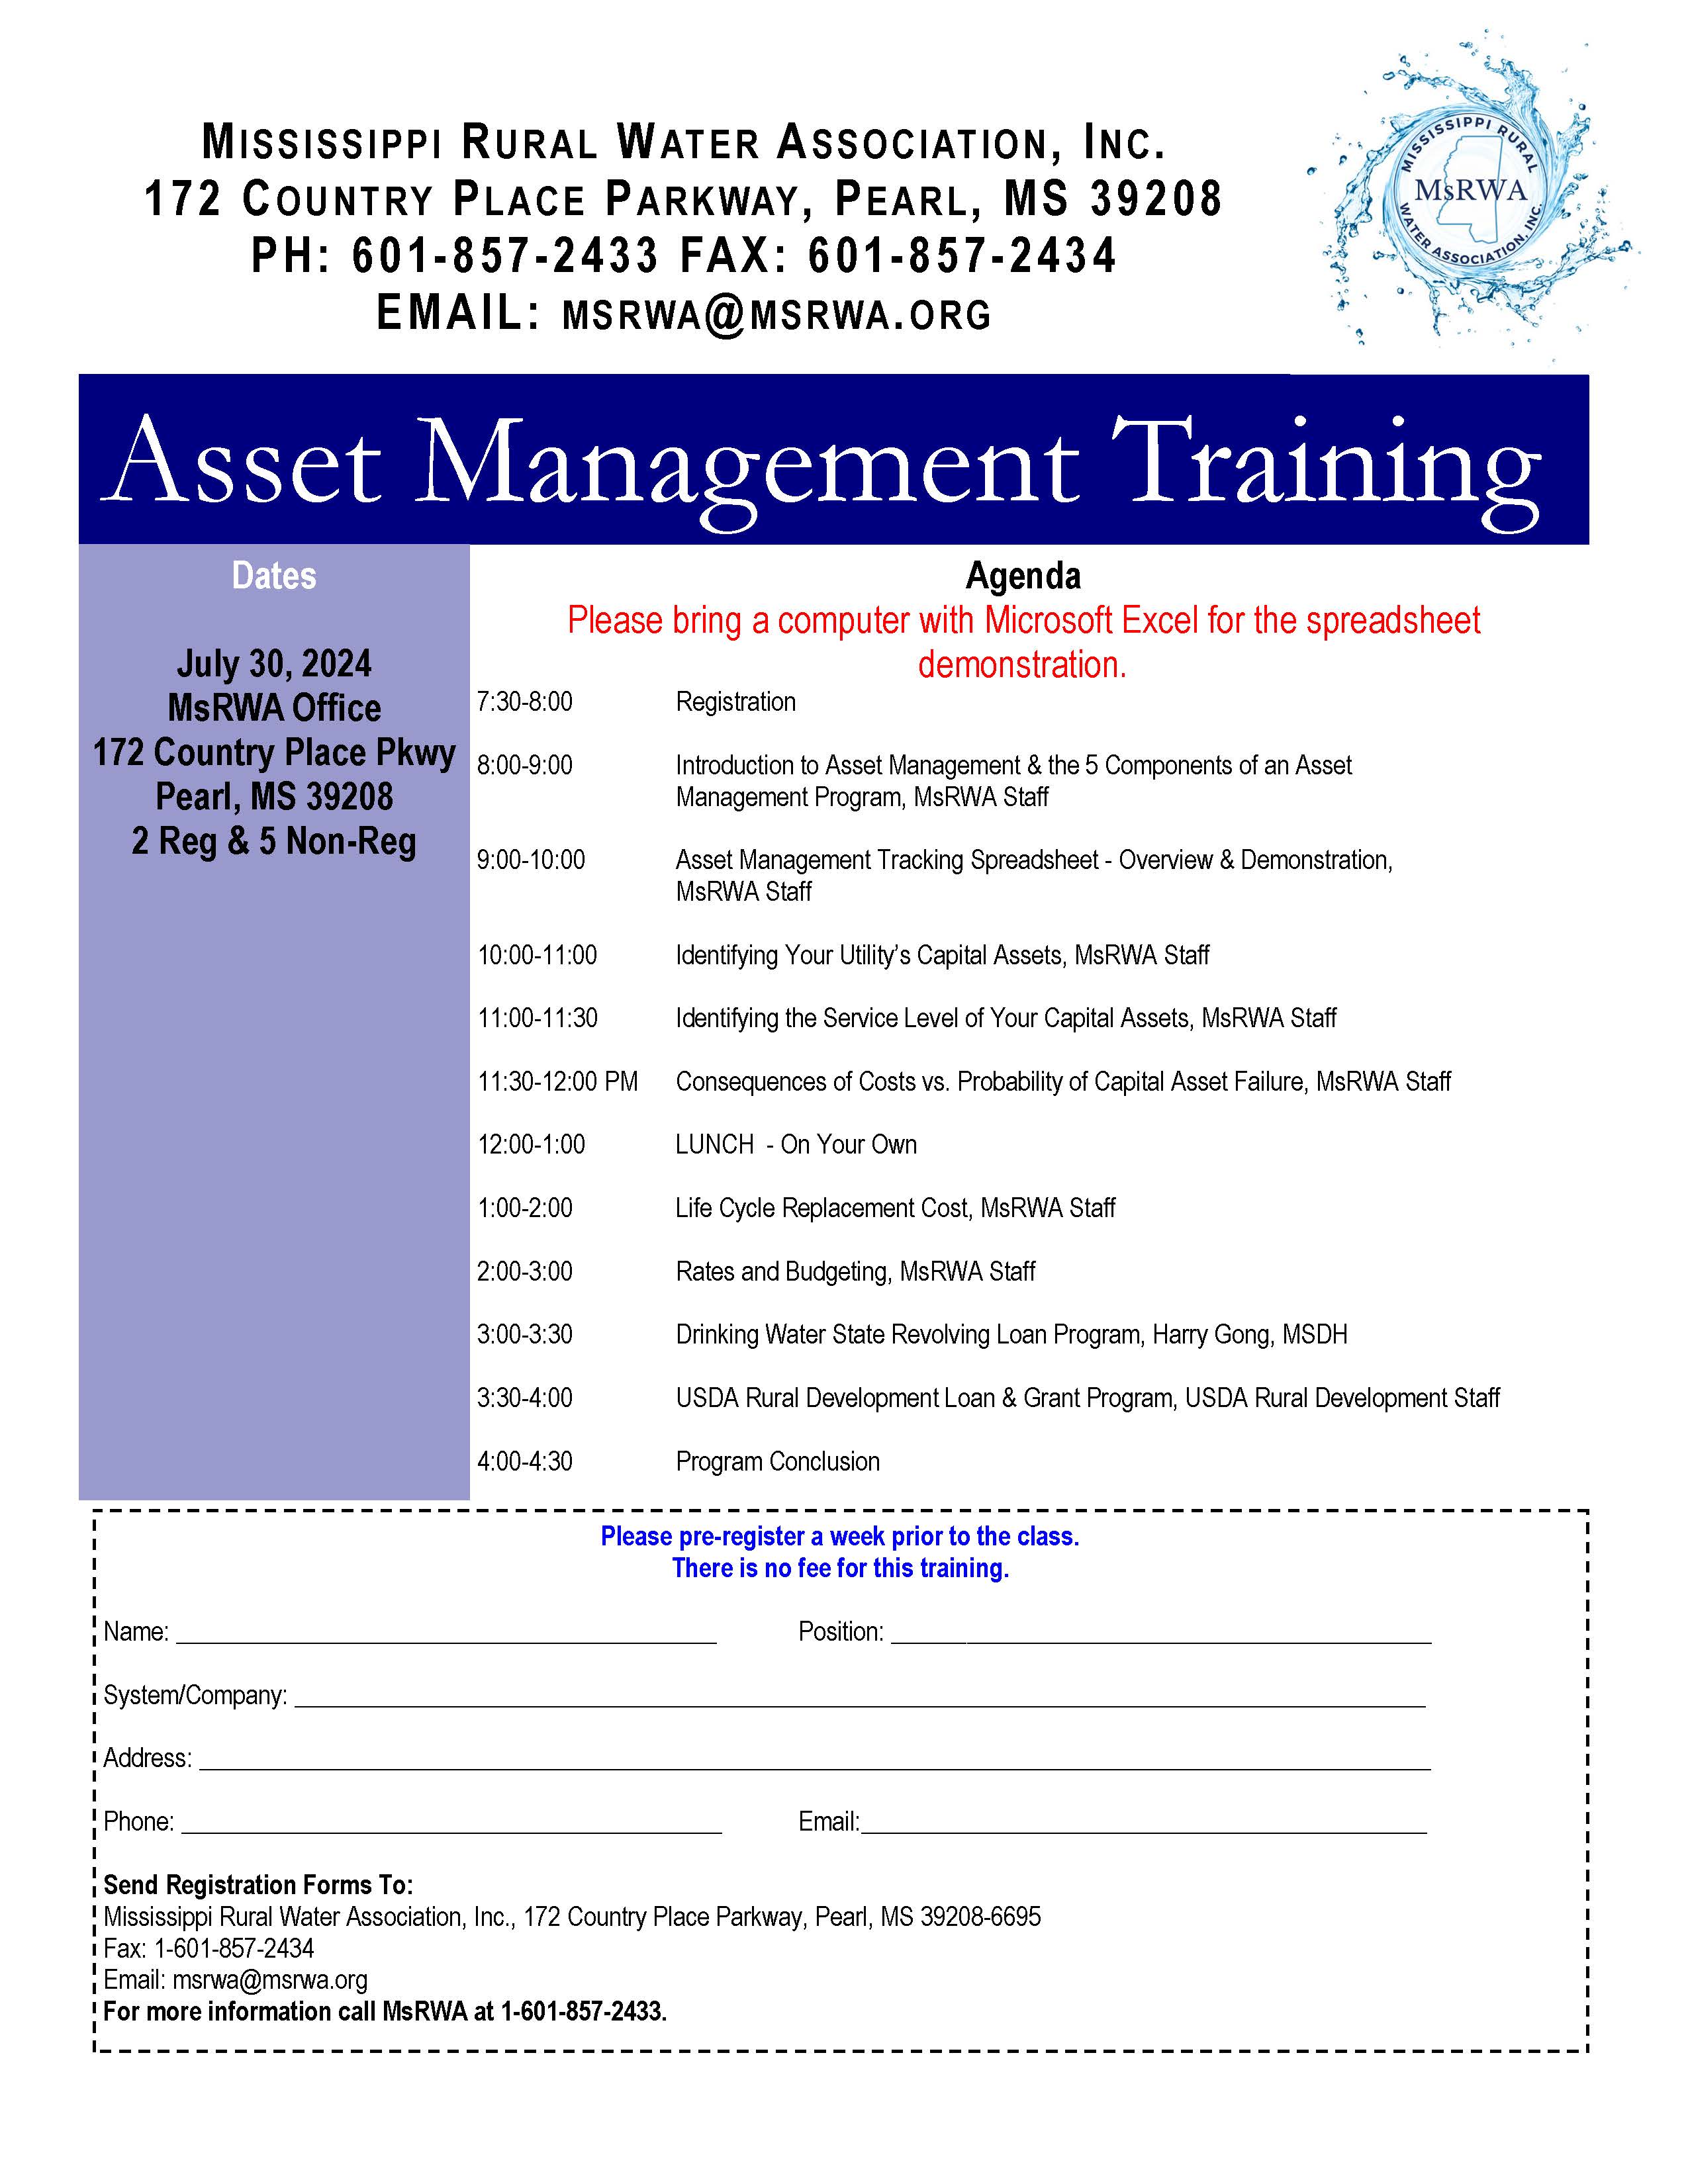 07/30/24 Asset Management Training Registration Form